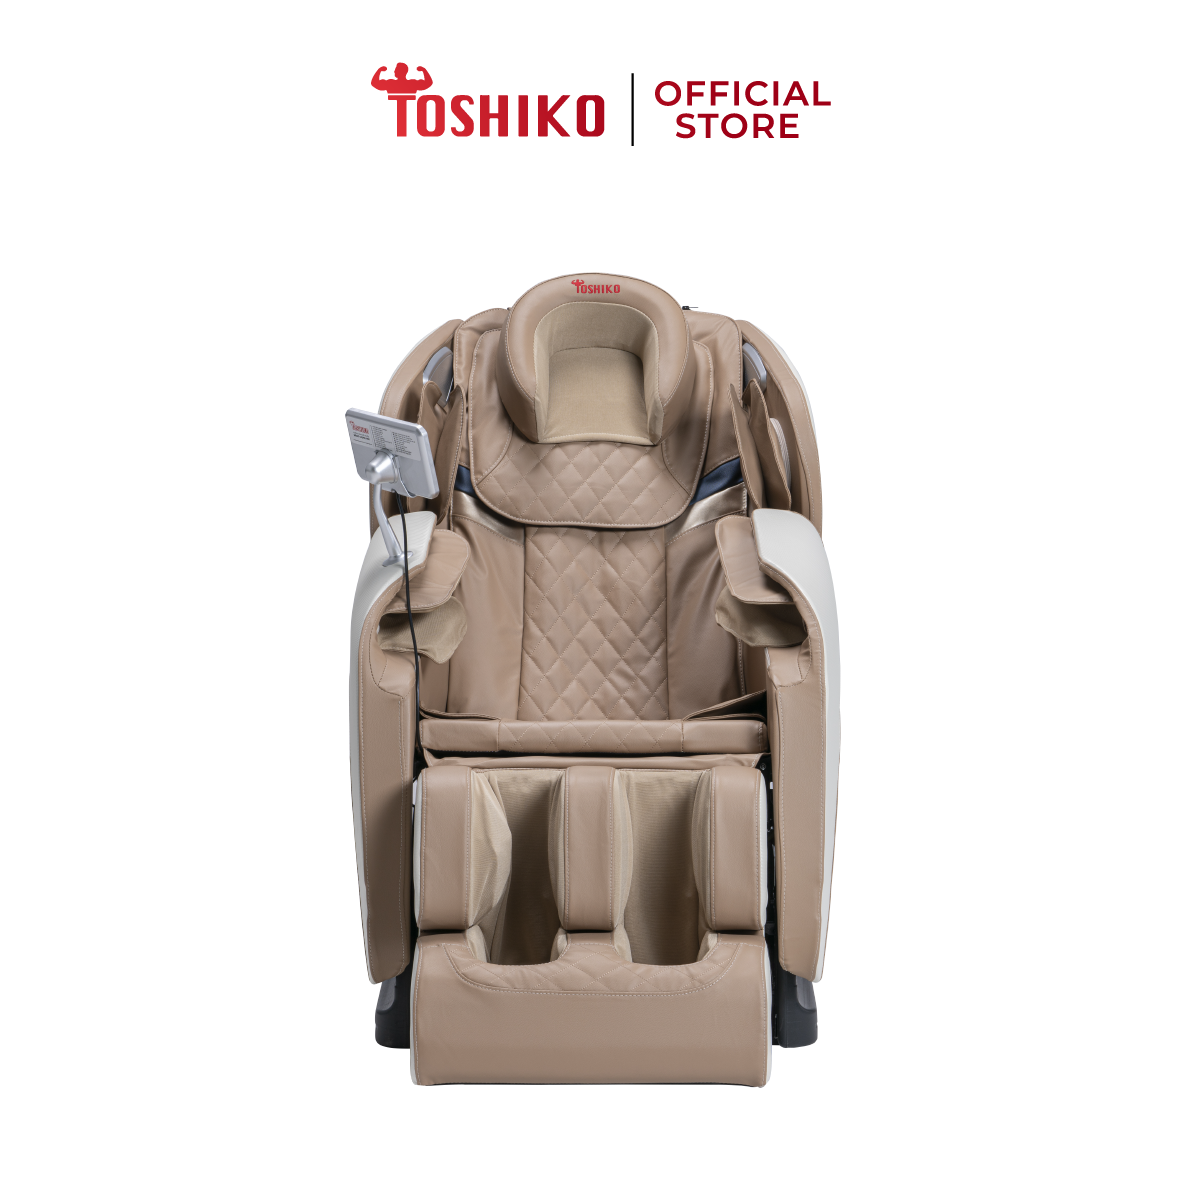 [TRẢ GÓP 0%] [Quà tặng trị giá 1,3TR] Ghế massage toàn thân công nghệ Nhật Bản cao cấp Toshiko T21...